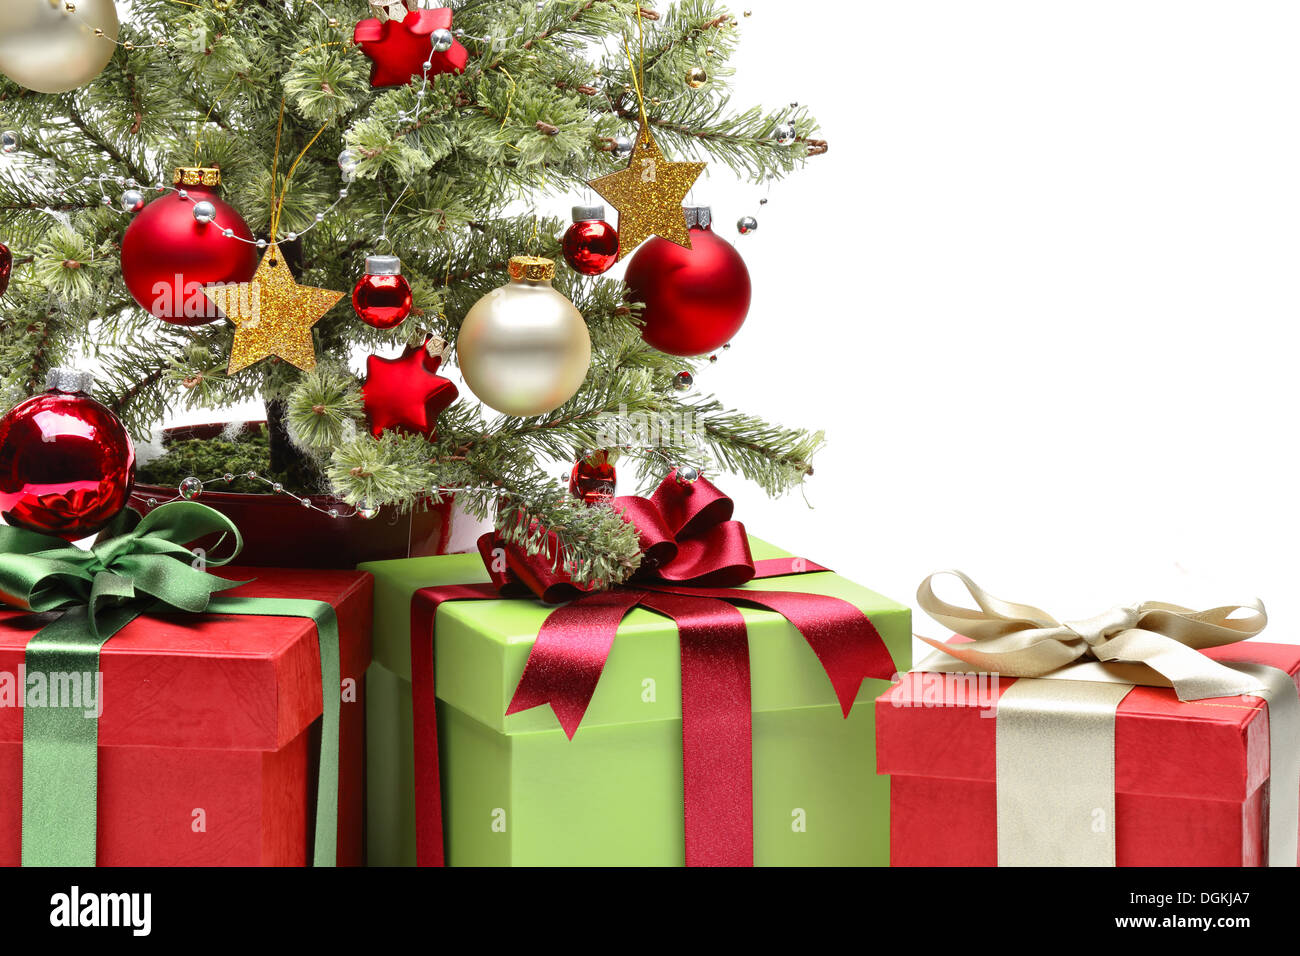 Dekorierten Weihnachtsbaum und Geschenke auf weißem Hintergrund Stockfoto